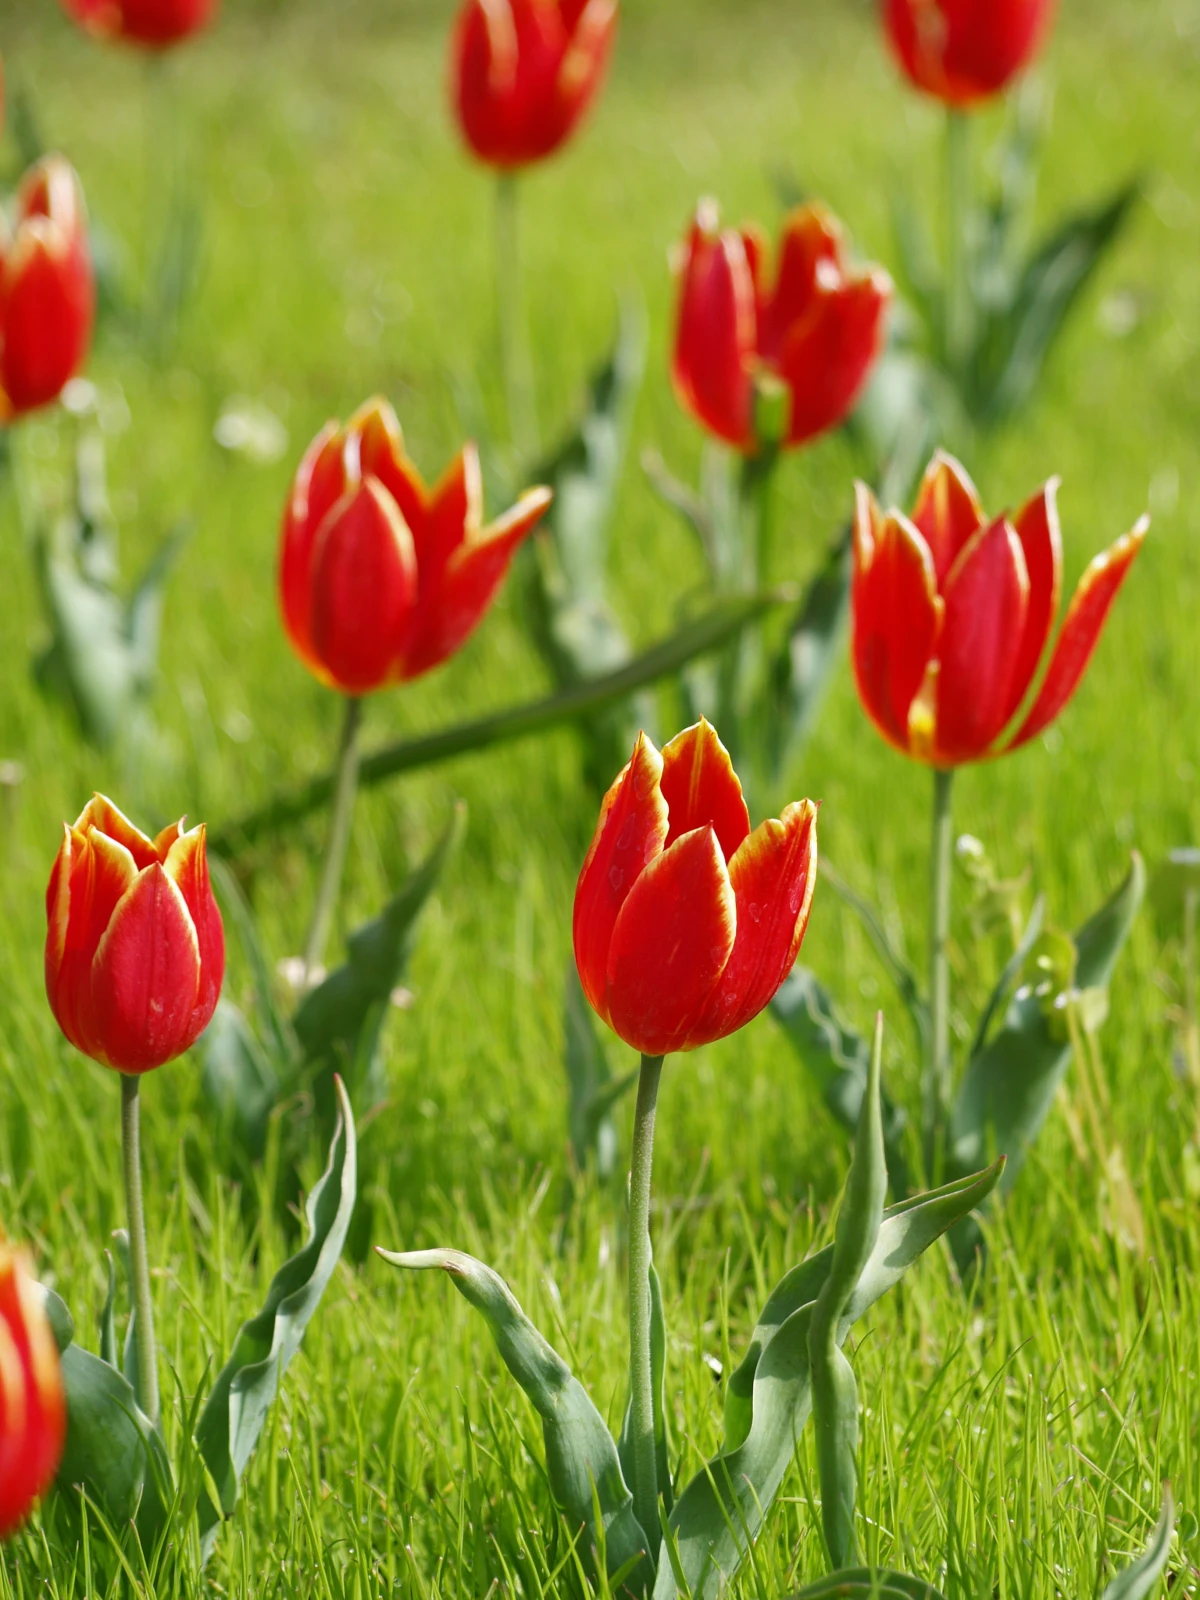 planter des tulipes au printemps fleurs rouges feuilles vertes